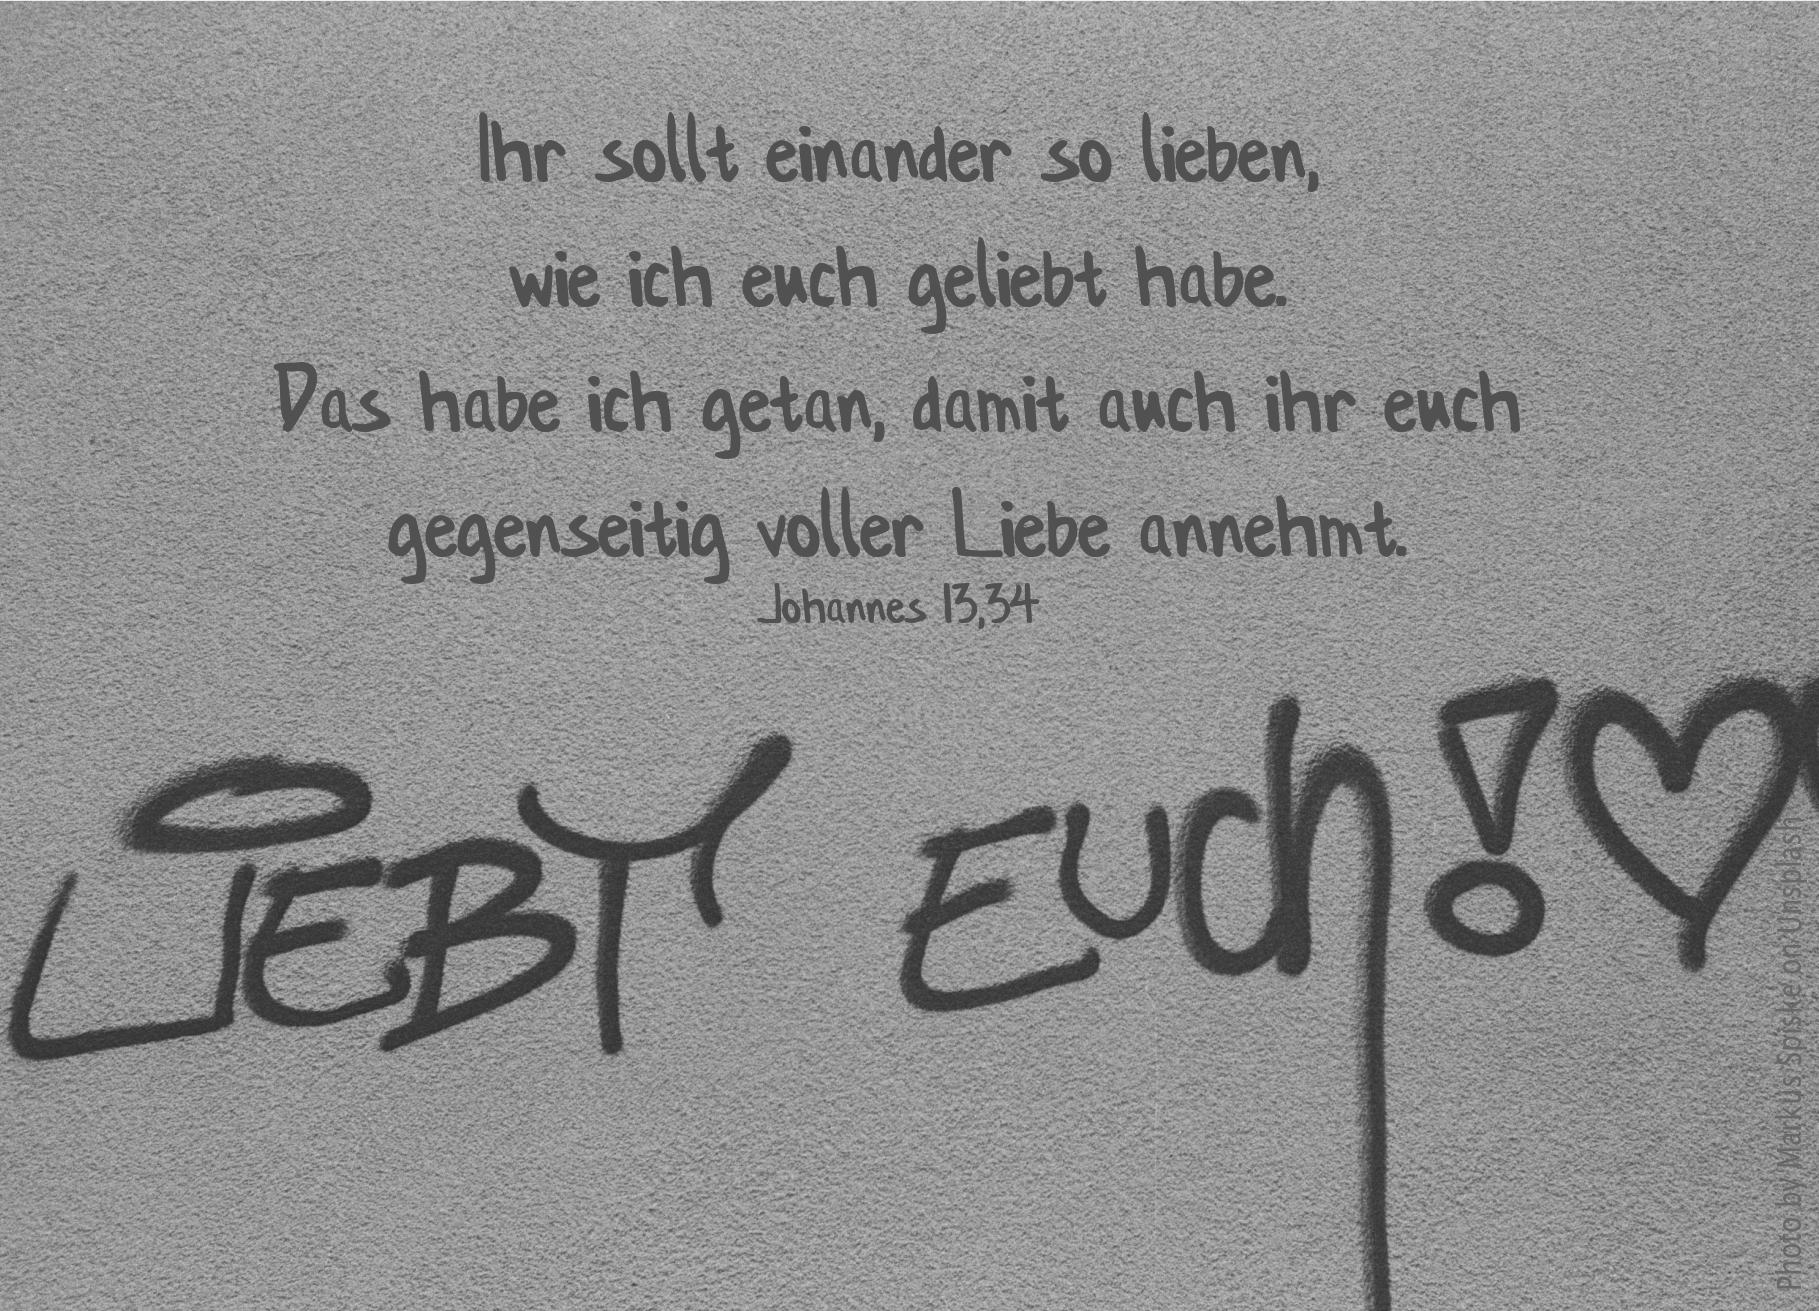 alt="Grafitti_liebt_euch_auf_hauswand_erwartet_bibelhoerbuch_der_weg_zum_vater"